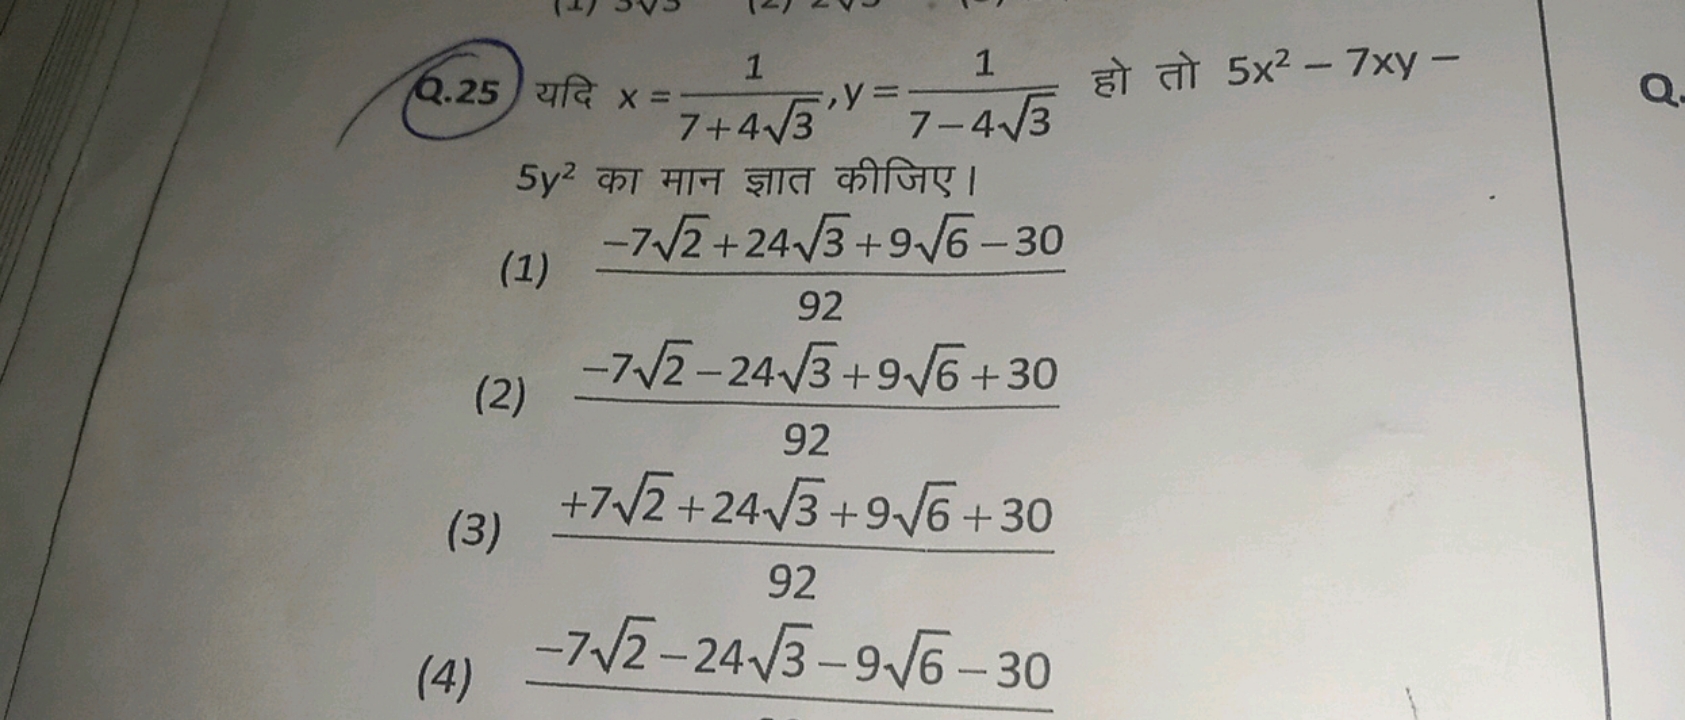 Q.25 यदि x=7+43​1​,y=7−43​1​ हो तो 5x2−7xy− 5y2 का मान ज्ञात कीजिए।